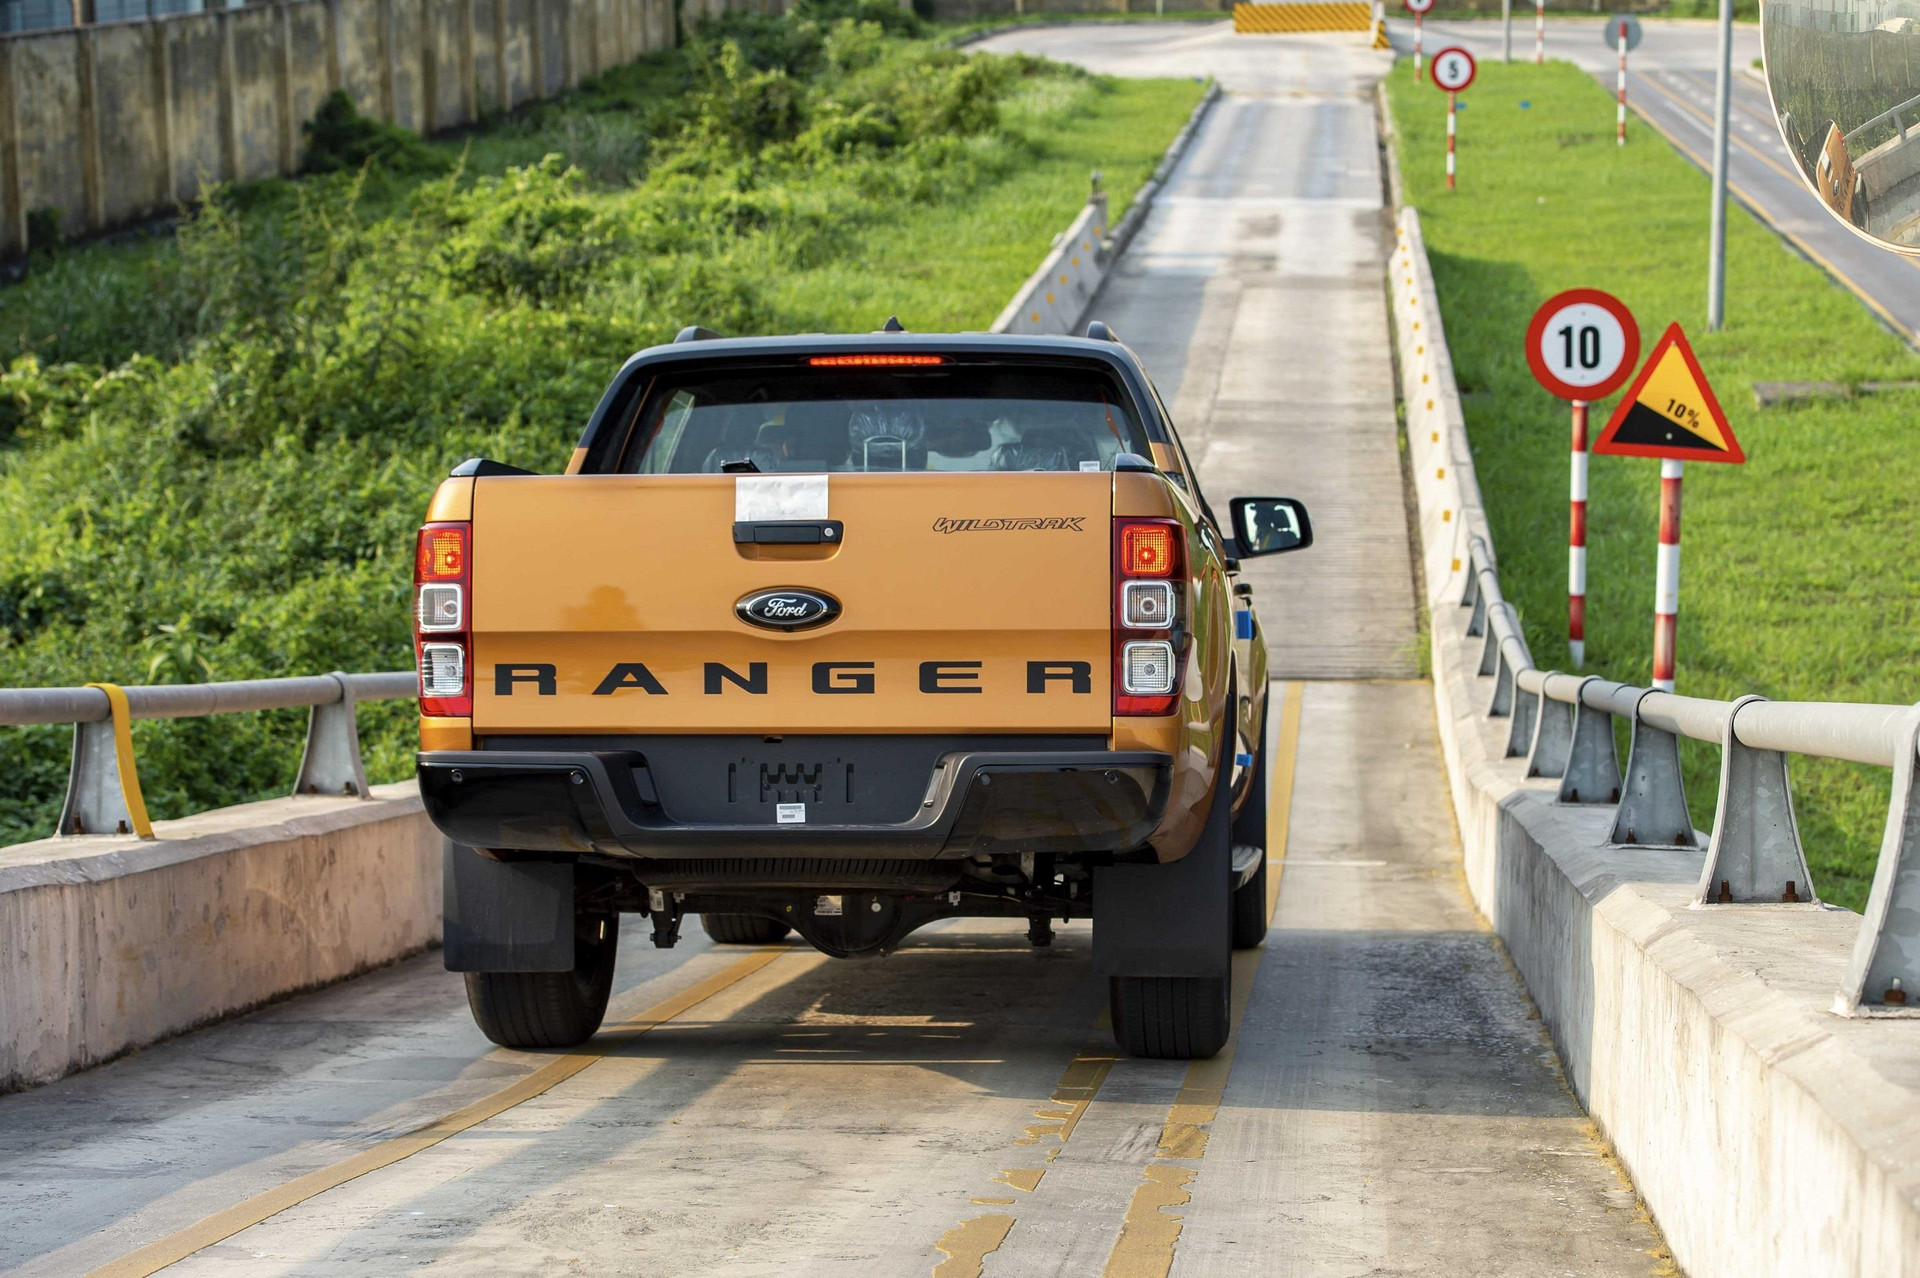 Ford Ranger Việt Nam đánh dấu cột mốc 20 năm có mặt tại Việt Nam - 9